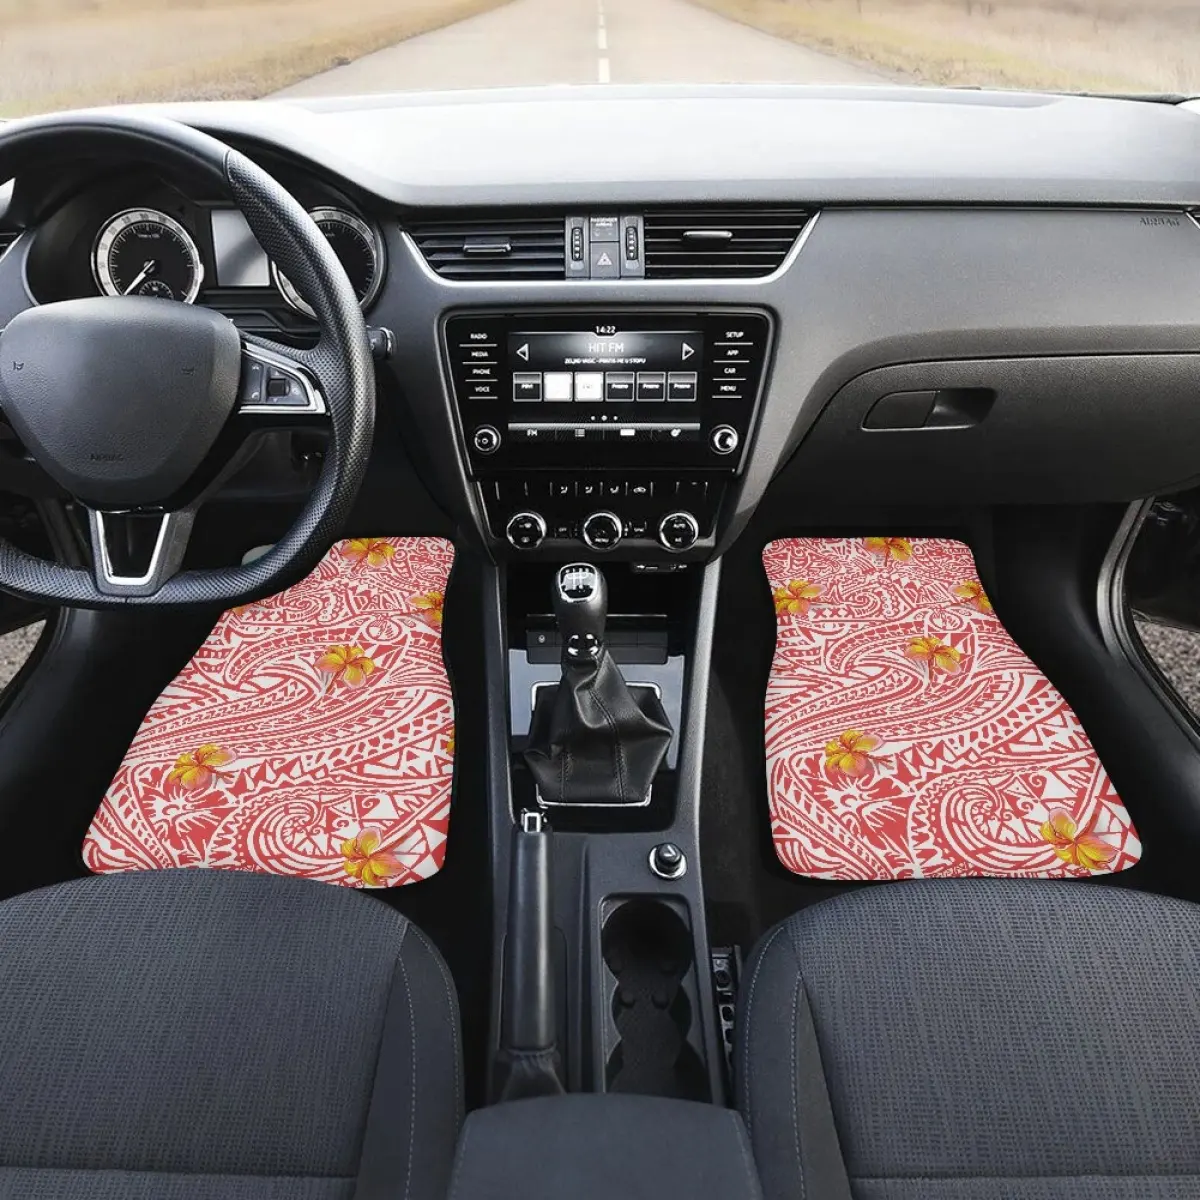 Tapete de carro estampado polynesian, padrão personalizado, borracha, para pés, universal, antiderrapante, 2 peças, carpete para carro